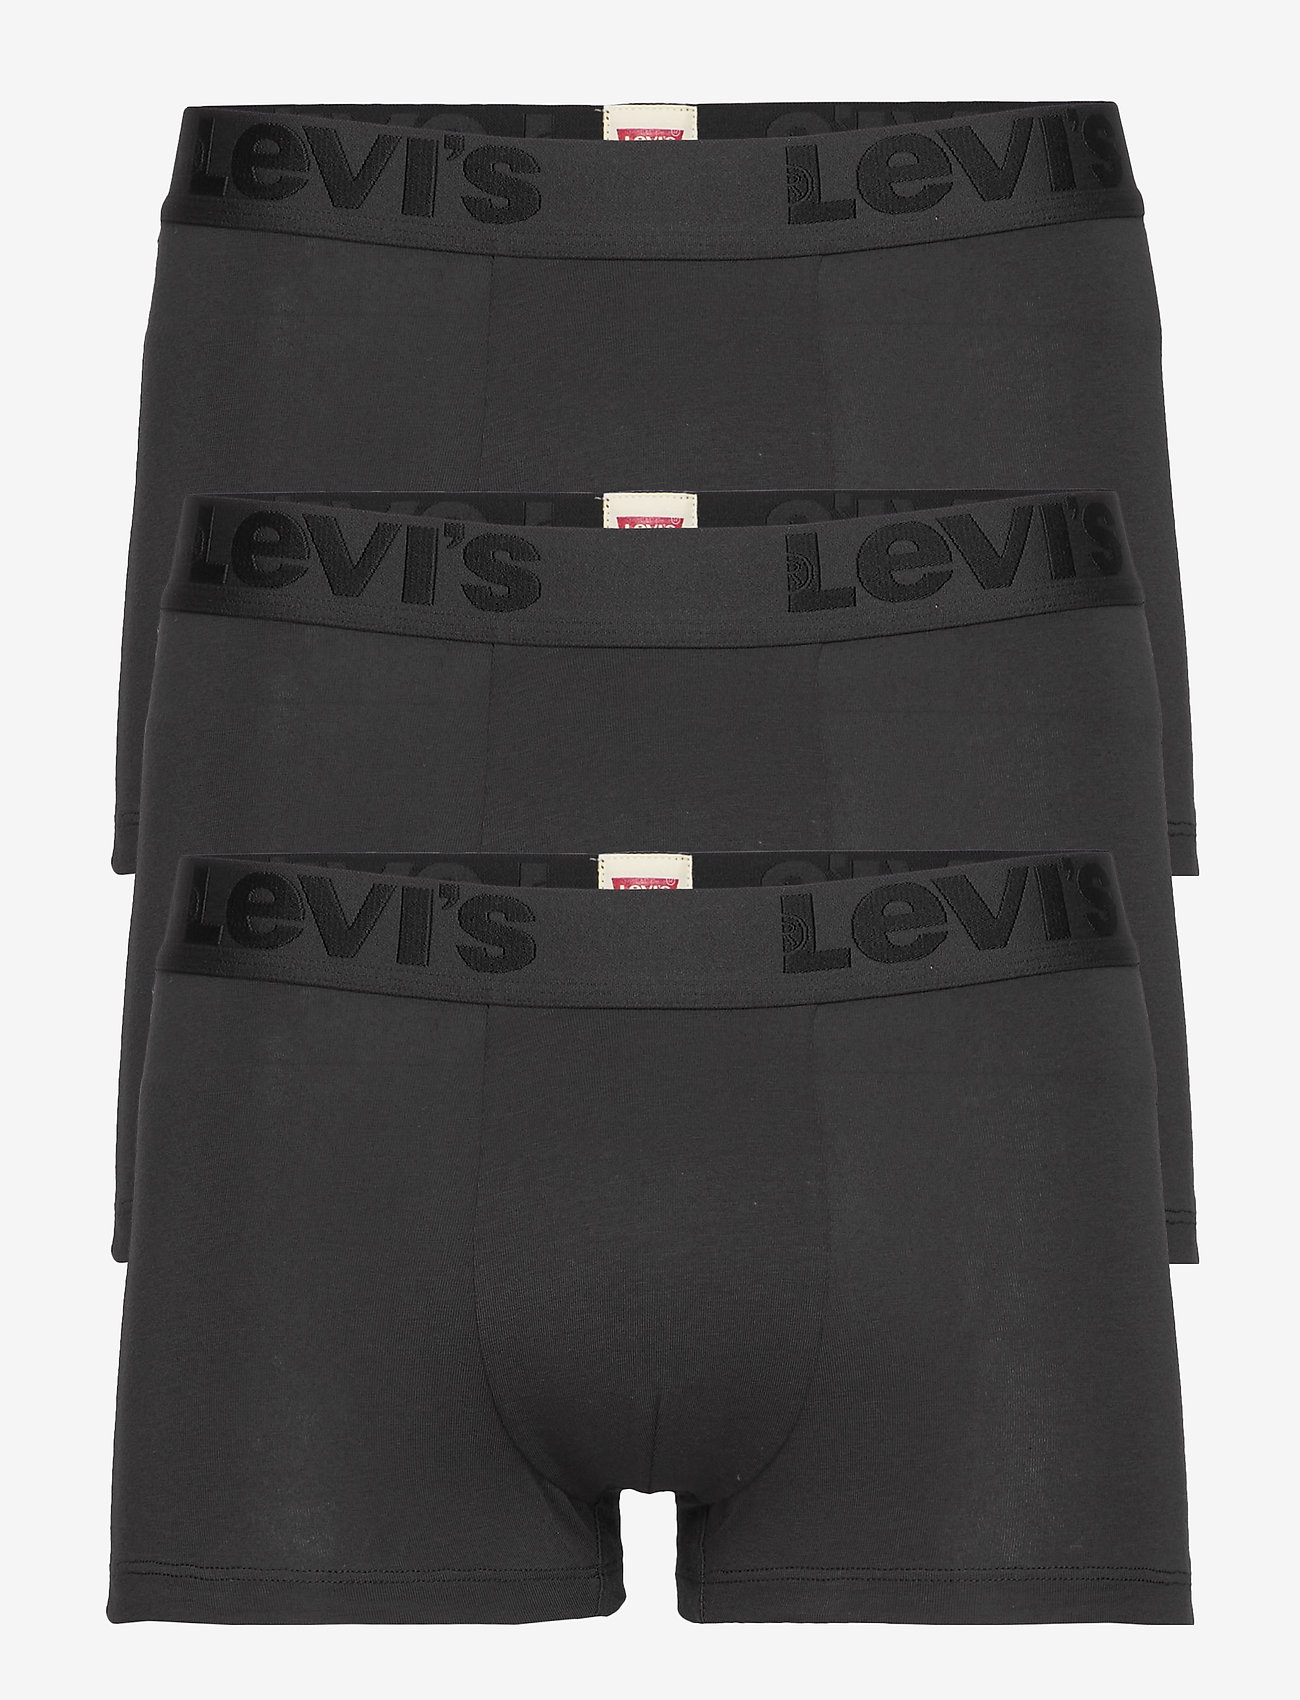 Levis Men Premium Trunk 3p (Black) (39 